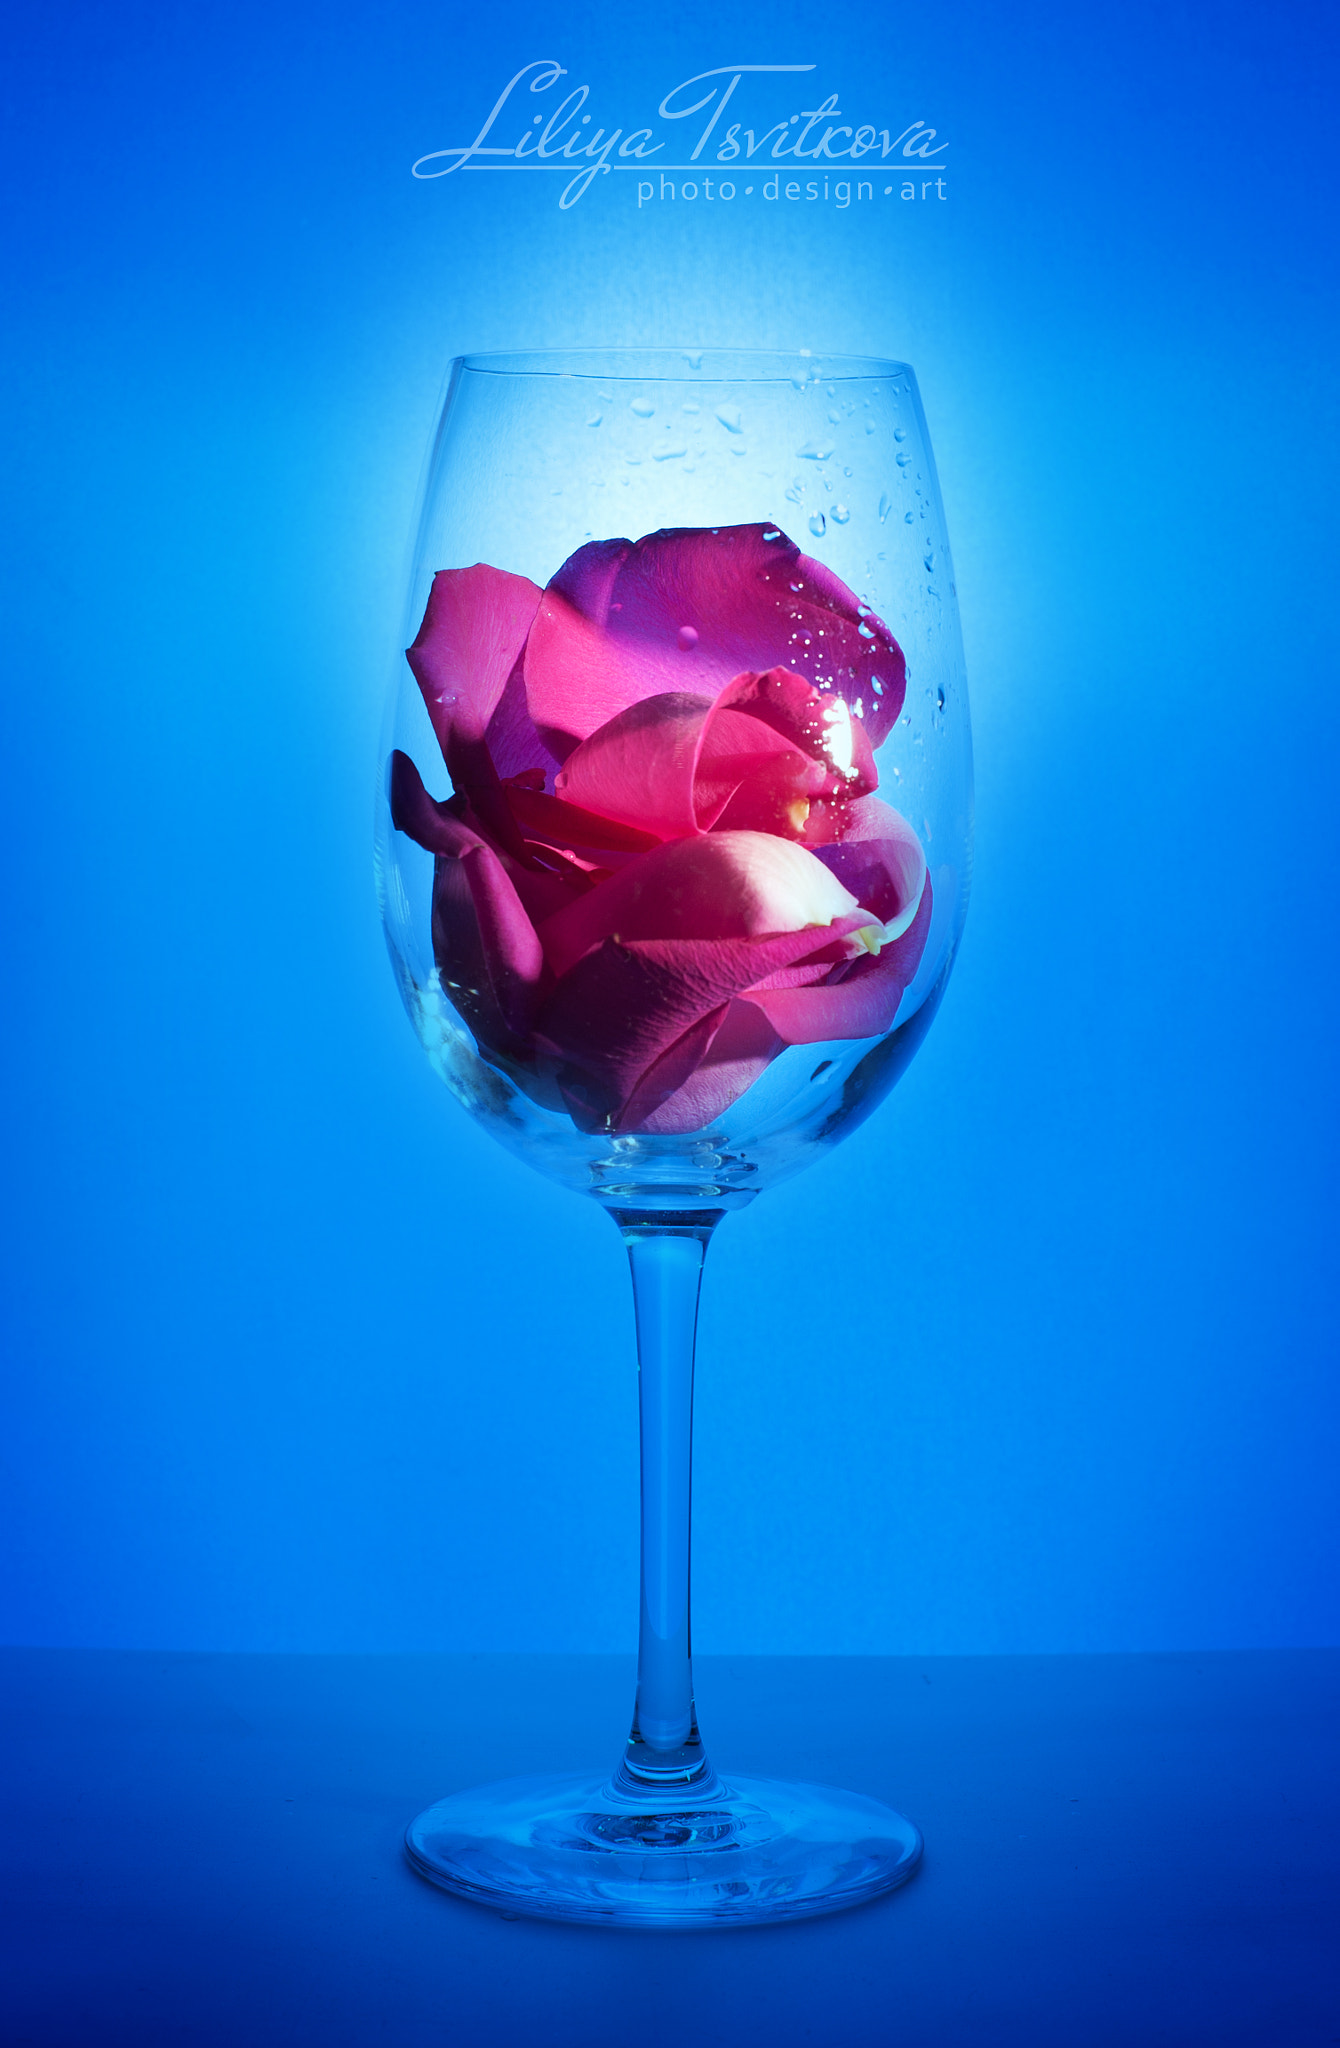 Nikon D700 sample photo. Rose petals photography